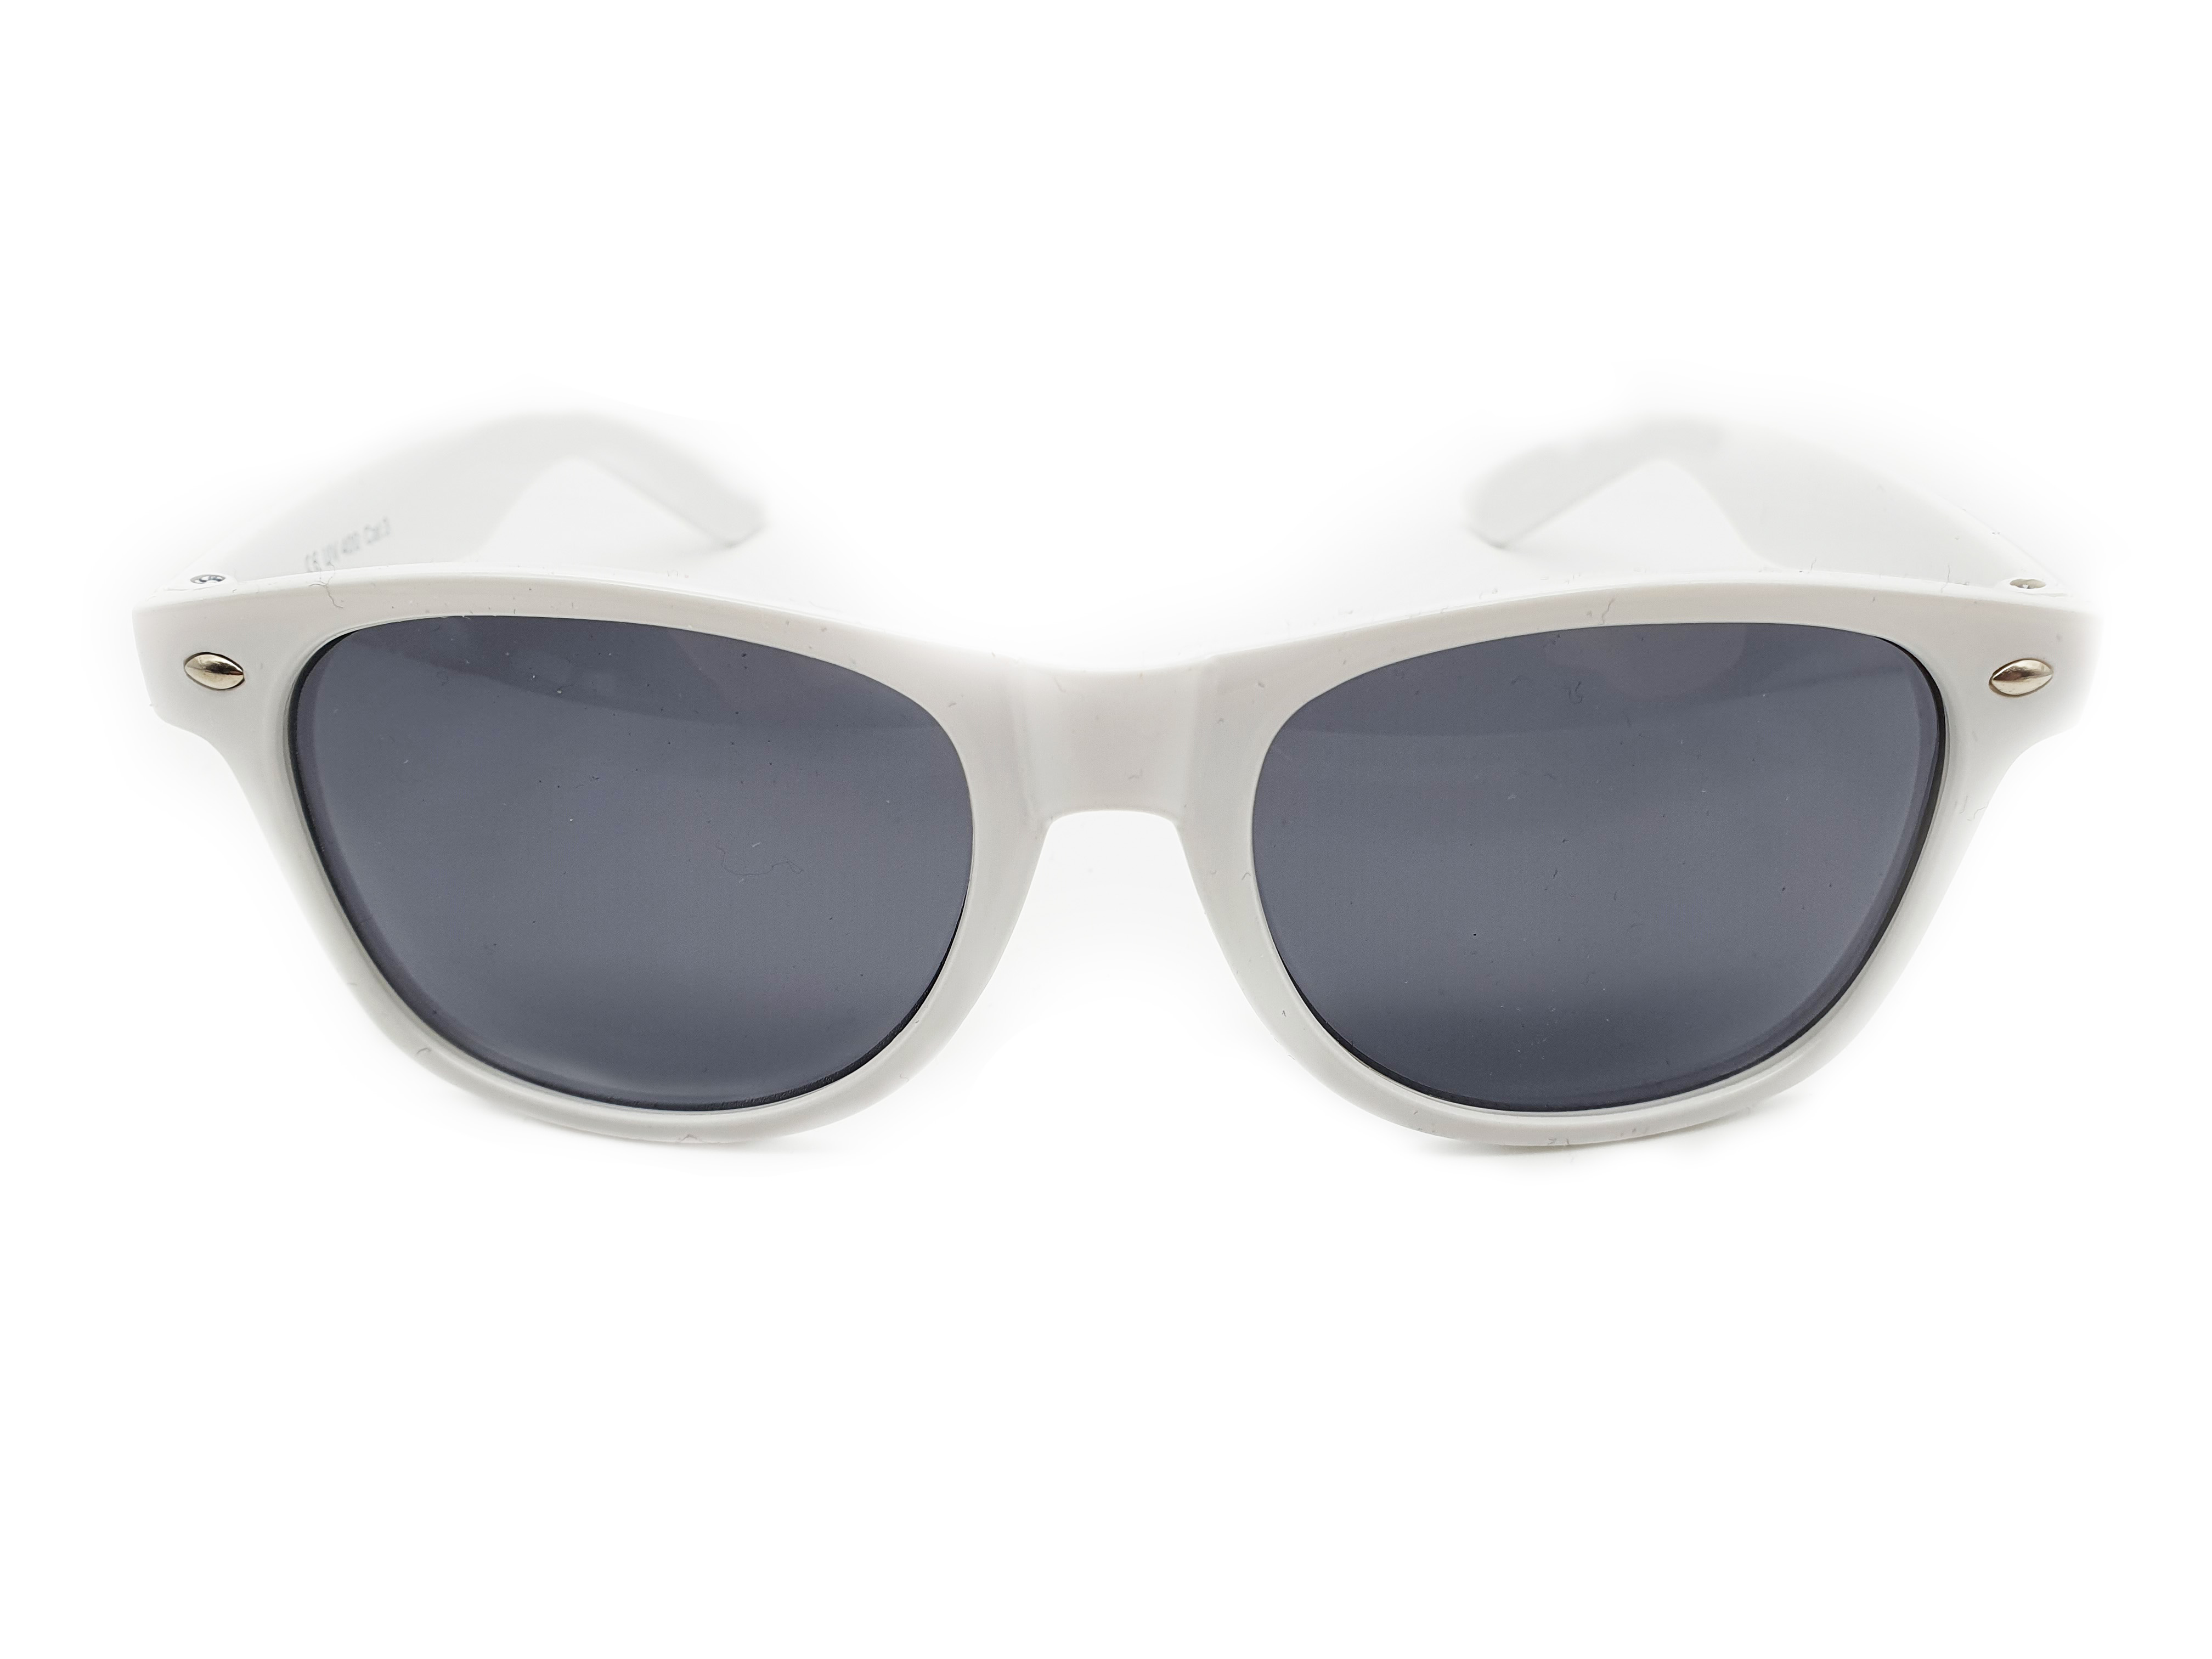 Rotaract sunglasses